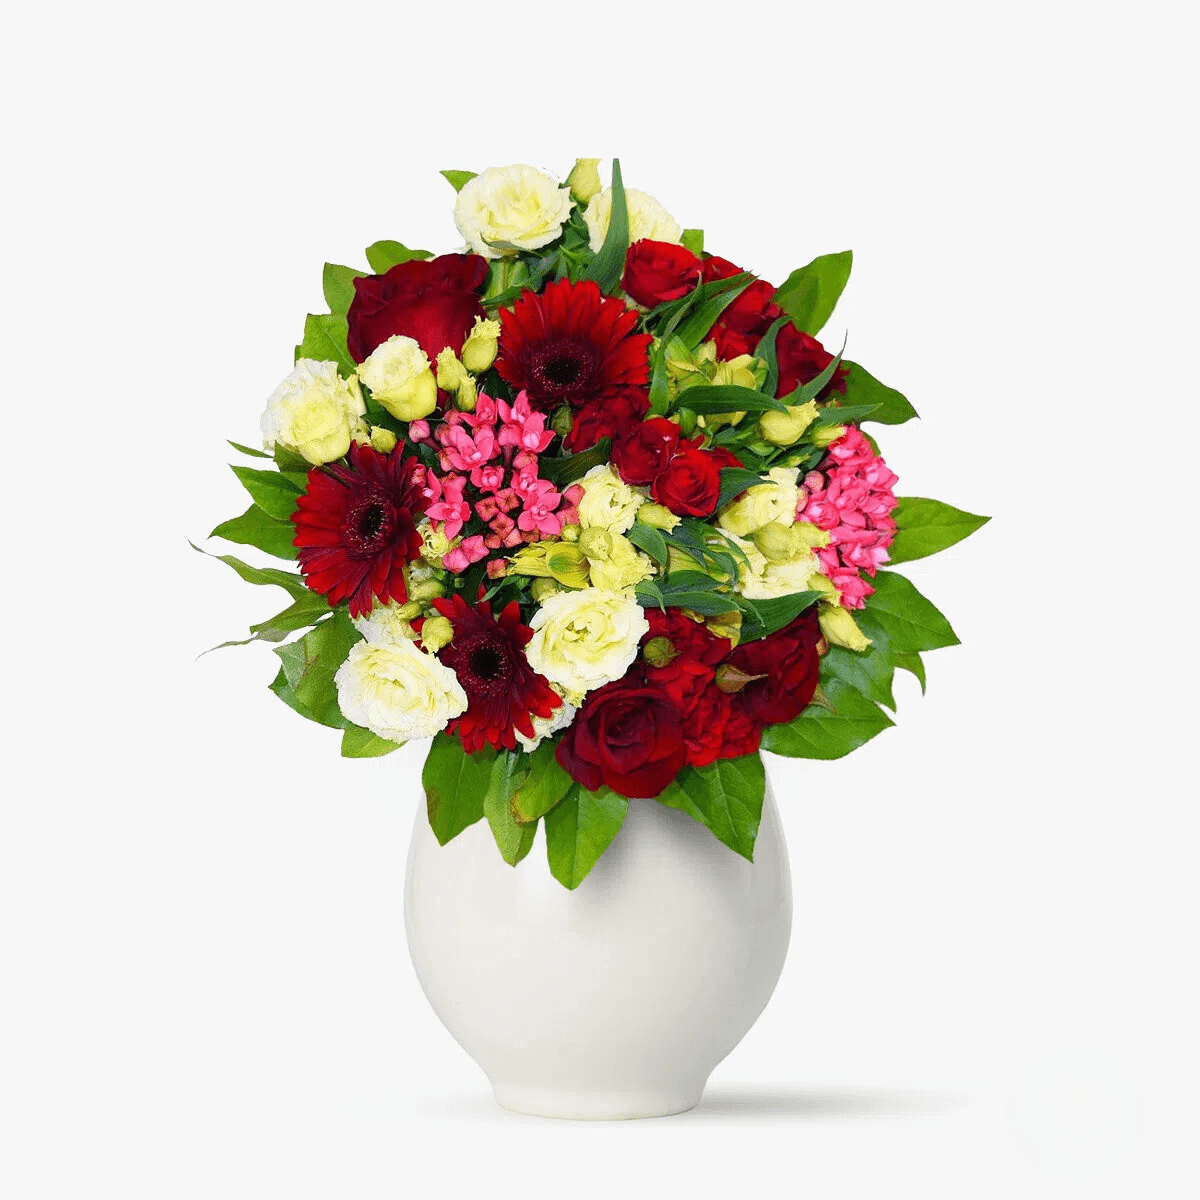 Buchet de flori cu minirosa rosii, alstroemeria galbene, trandafiri rosii, lisianthus Buchet pentru zambet